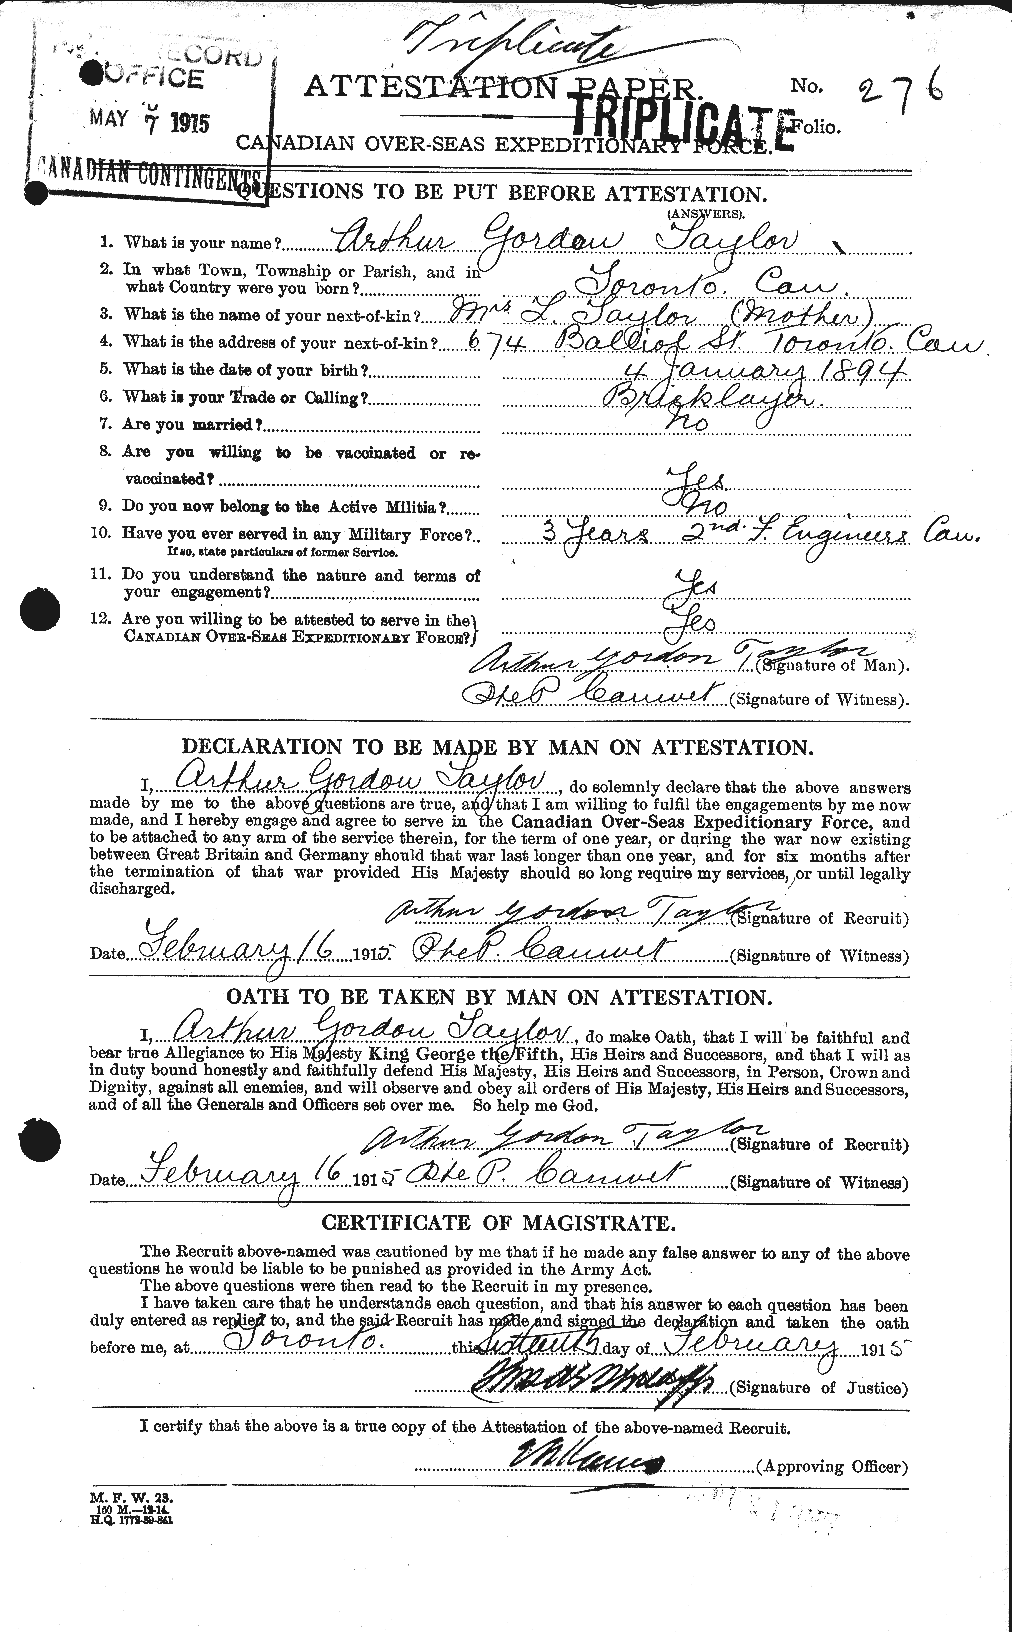 Dossiers du Personnel de la Première Guerre mondiale - CEC 626724a